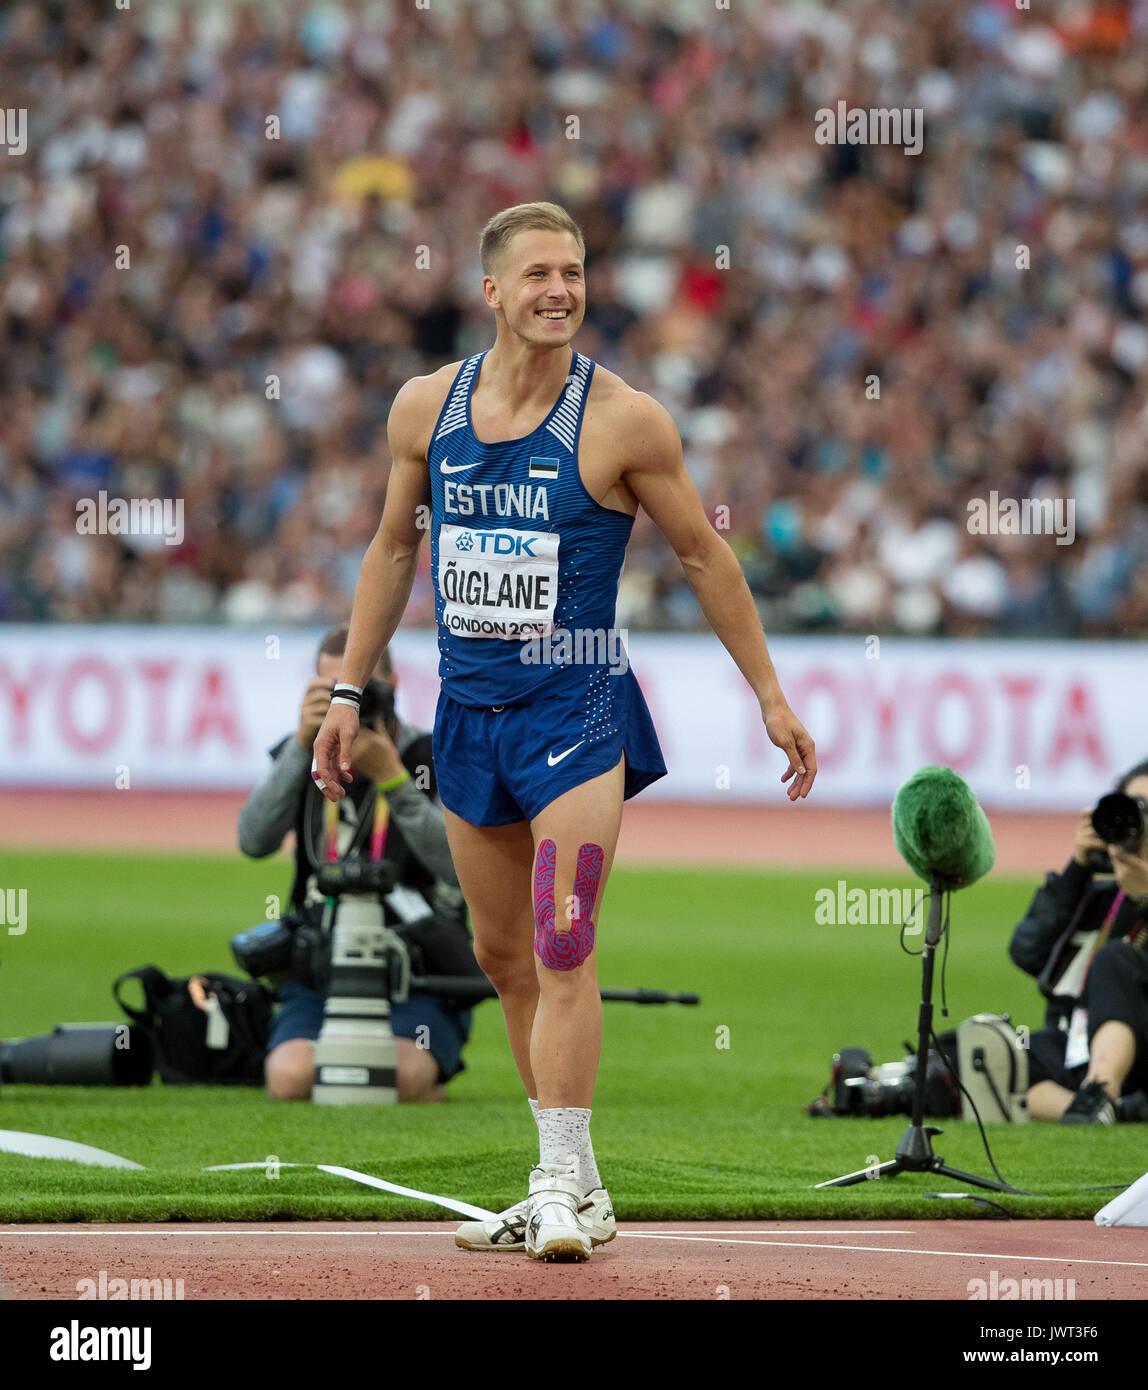 Janek OIGLANE d'Estonie célèbre un lancer au Javelot Décathlon pendant les championnats du monde d'athlétisme 2017 le jour 9 aux Jeux Olympiques Banque D'Images